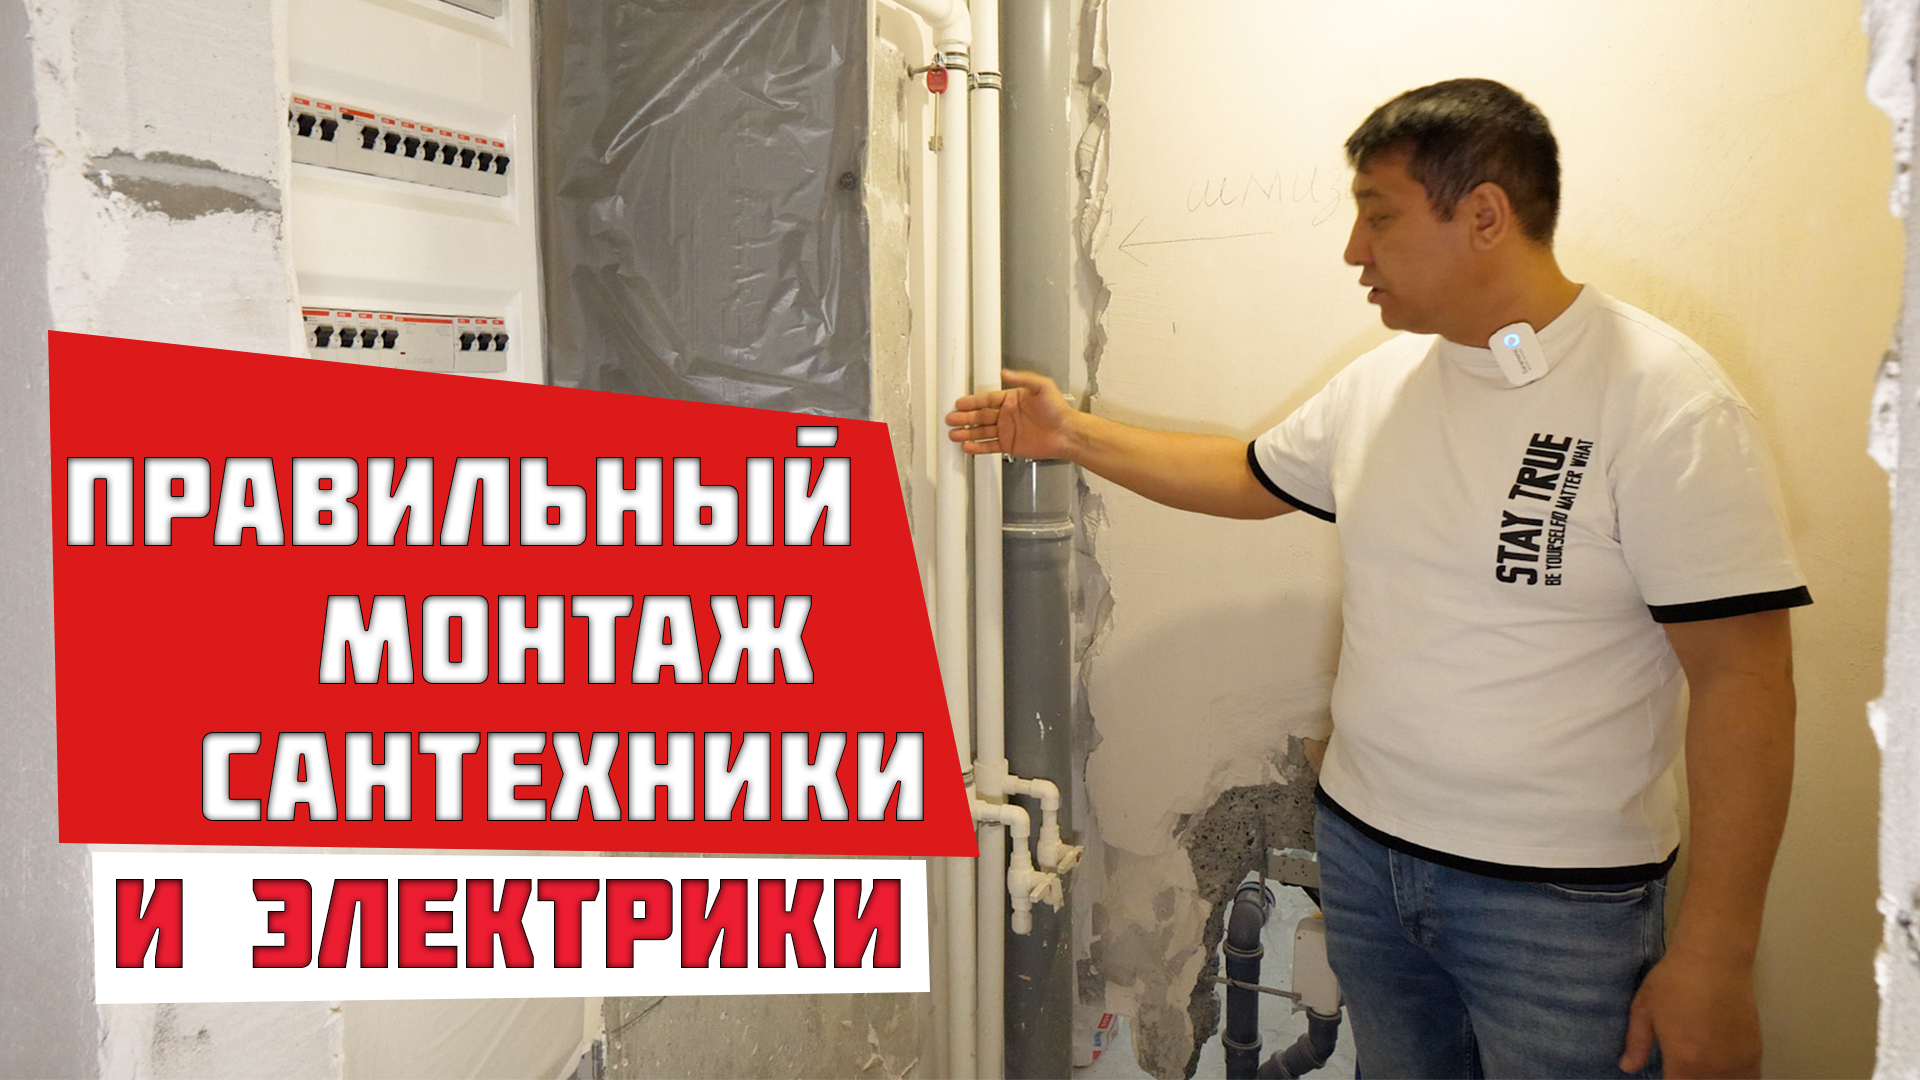 Делаем правильный монтаж электрики и сантехники при ремонте квартиры.